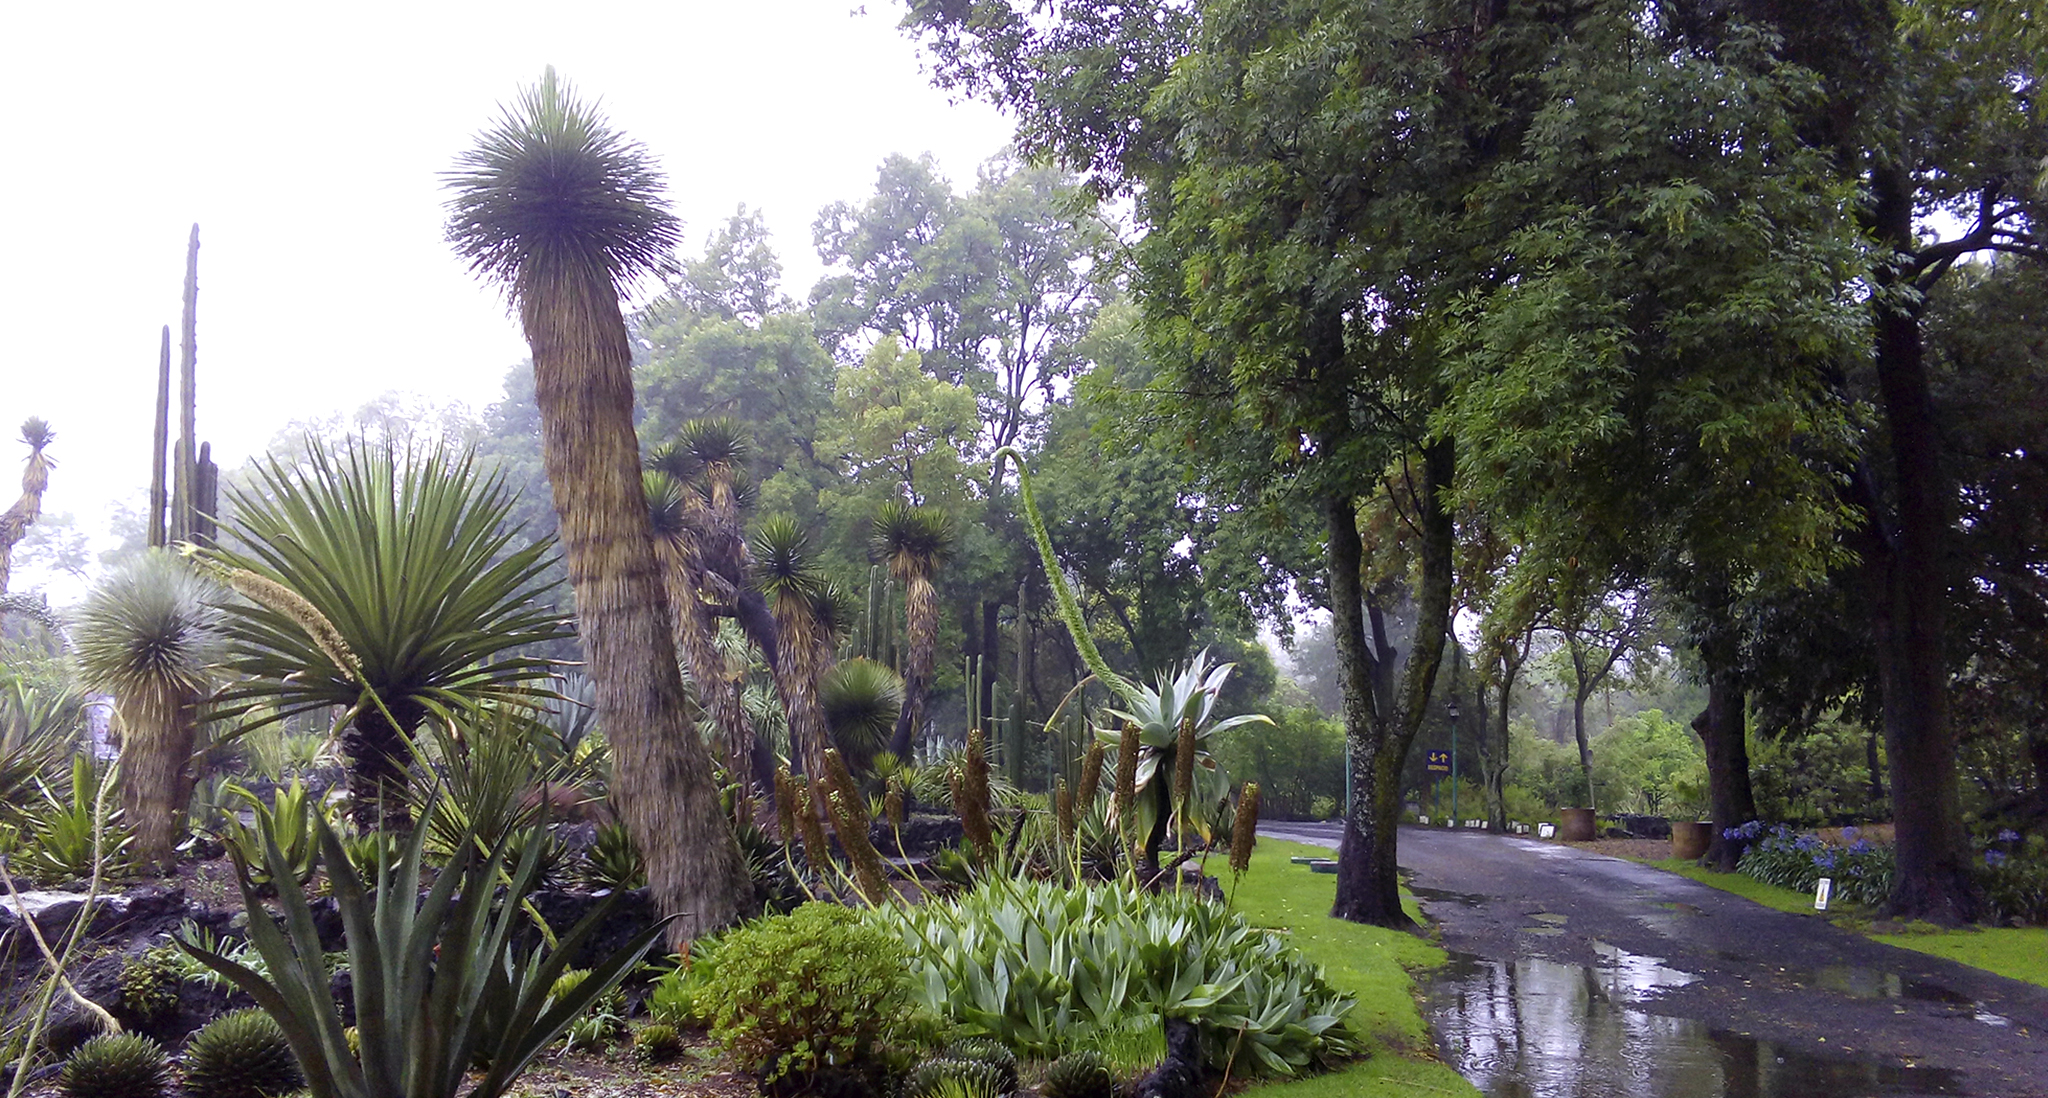 Jardín Botánico del IBUNAM